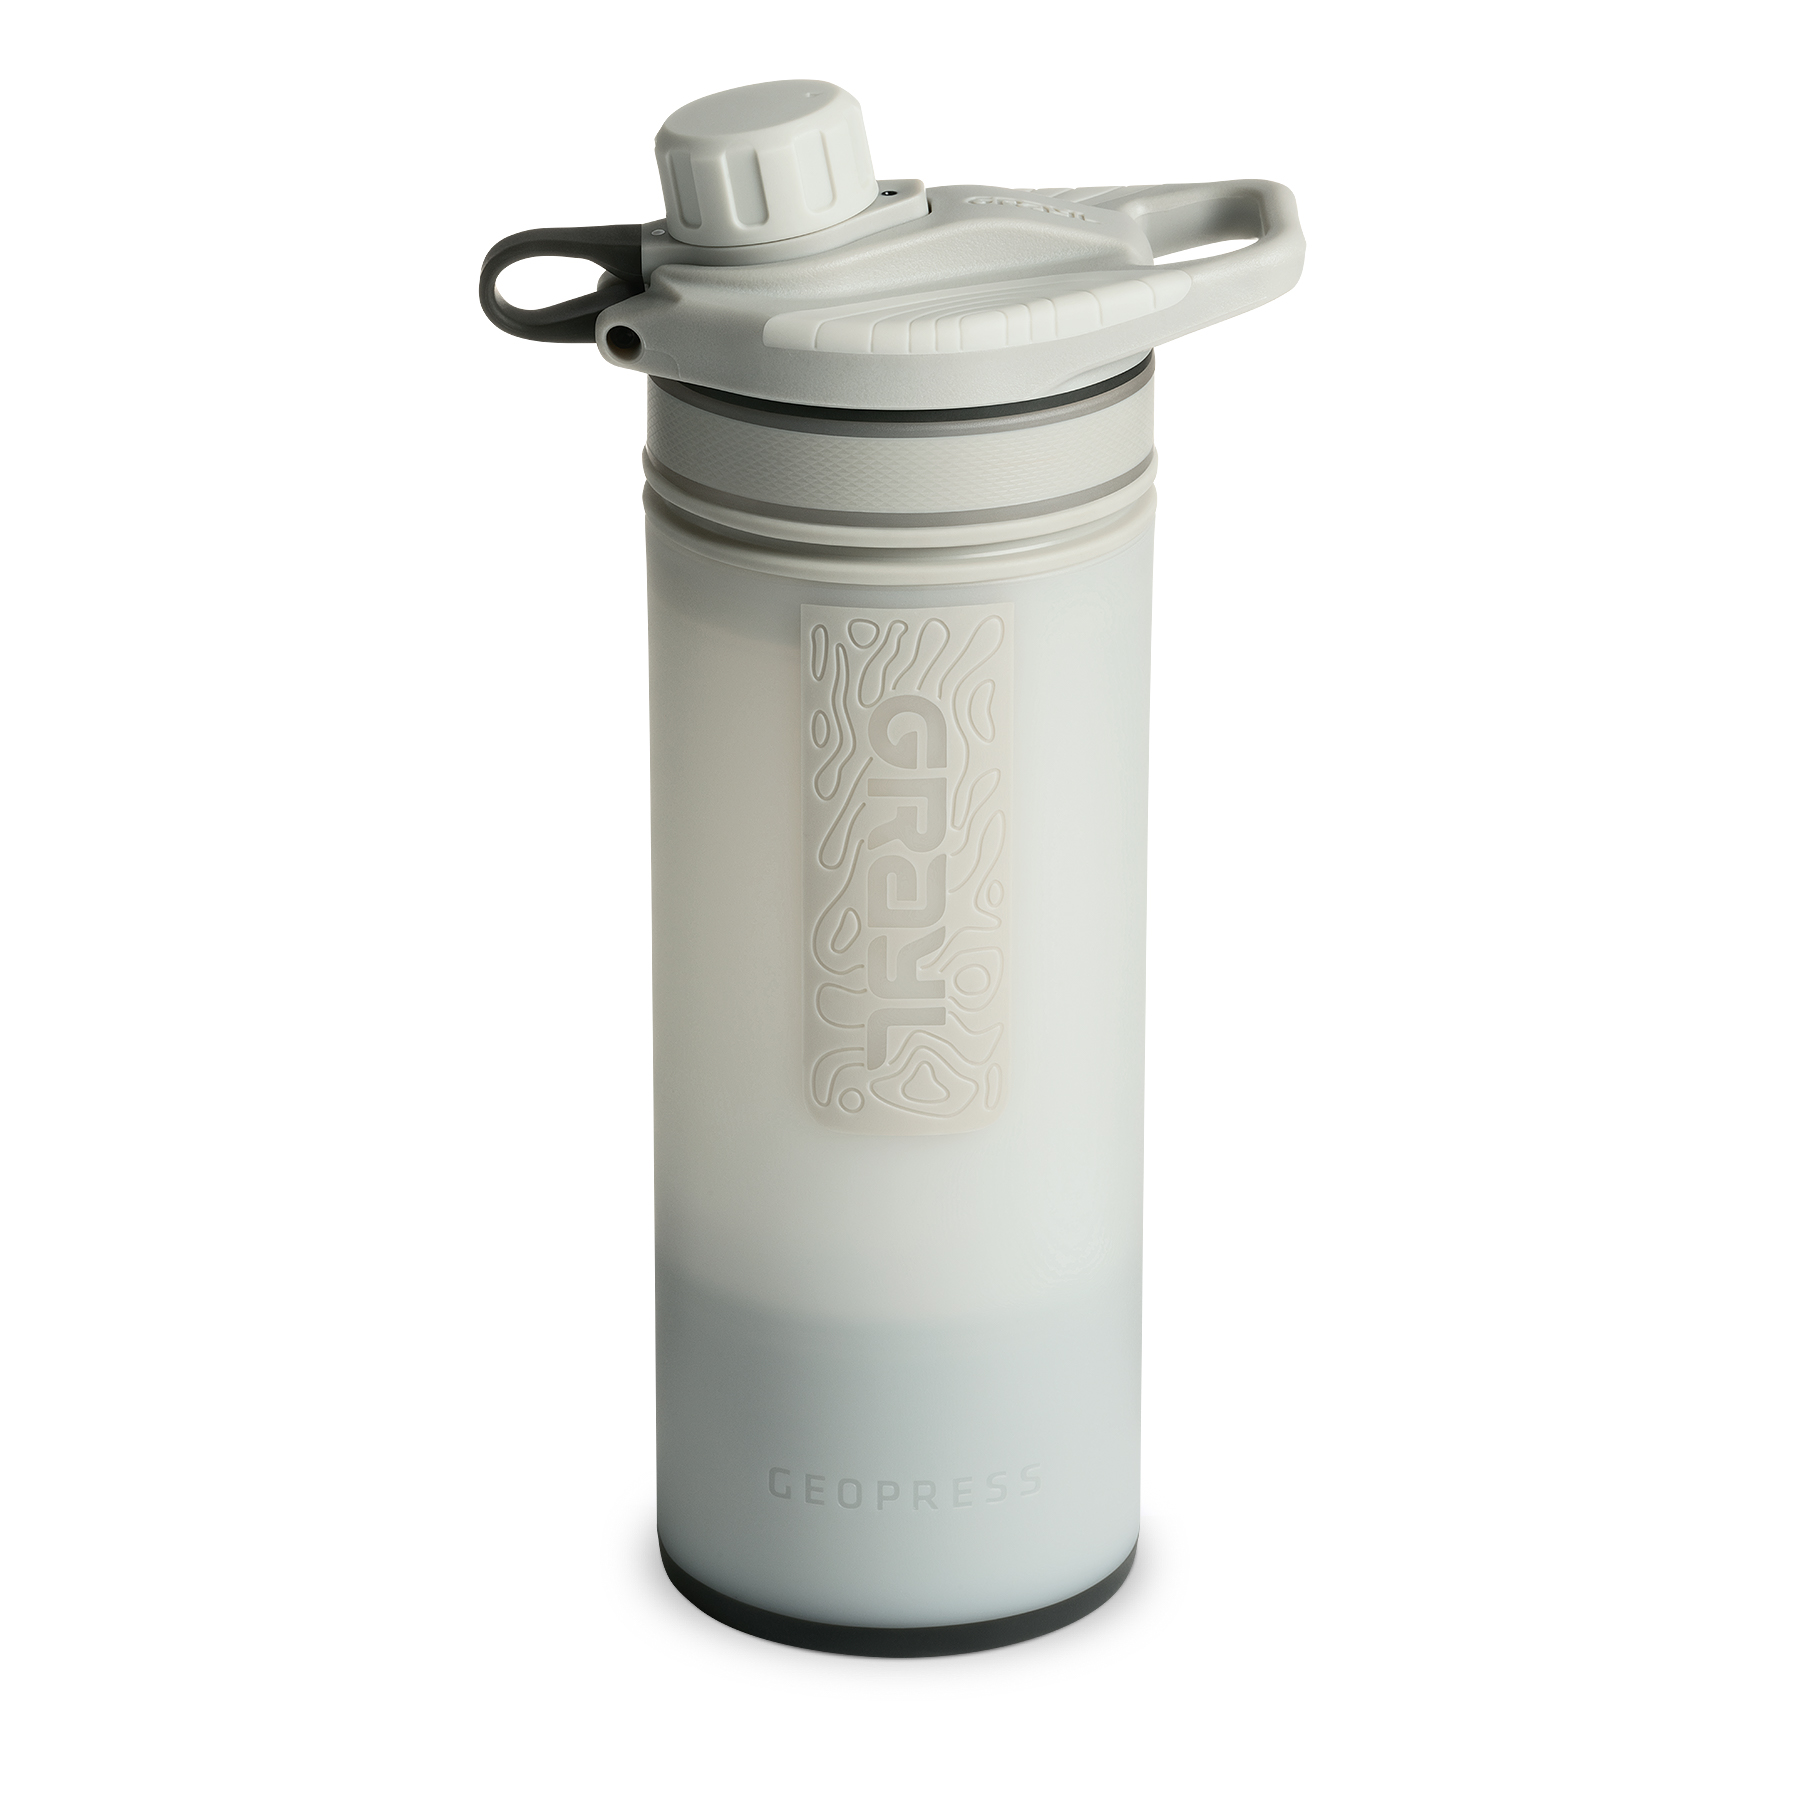 Produktbild von Grayl GeoPress Trinkflasche mit Wasserfilter - 710ml - Peak White